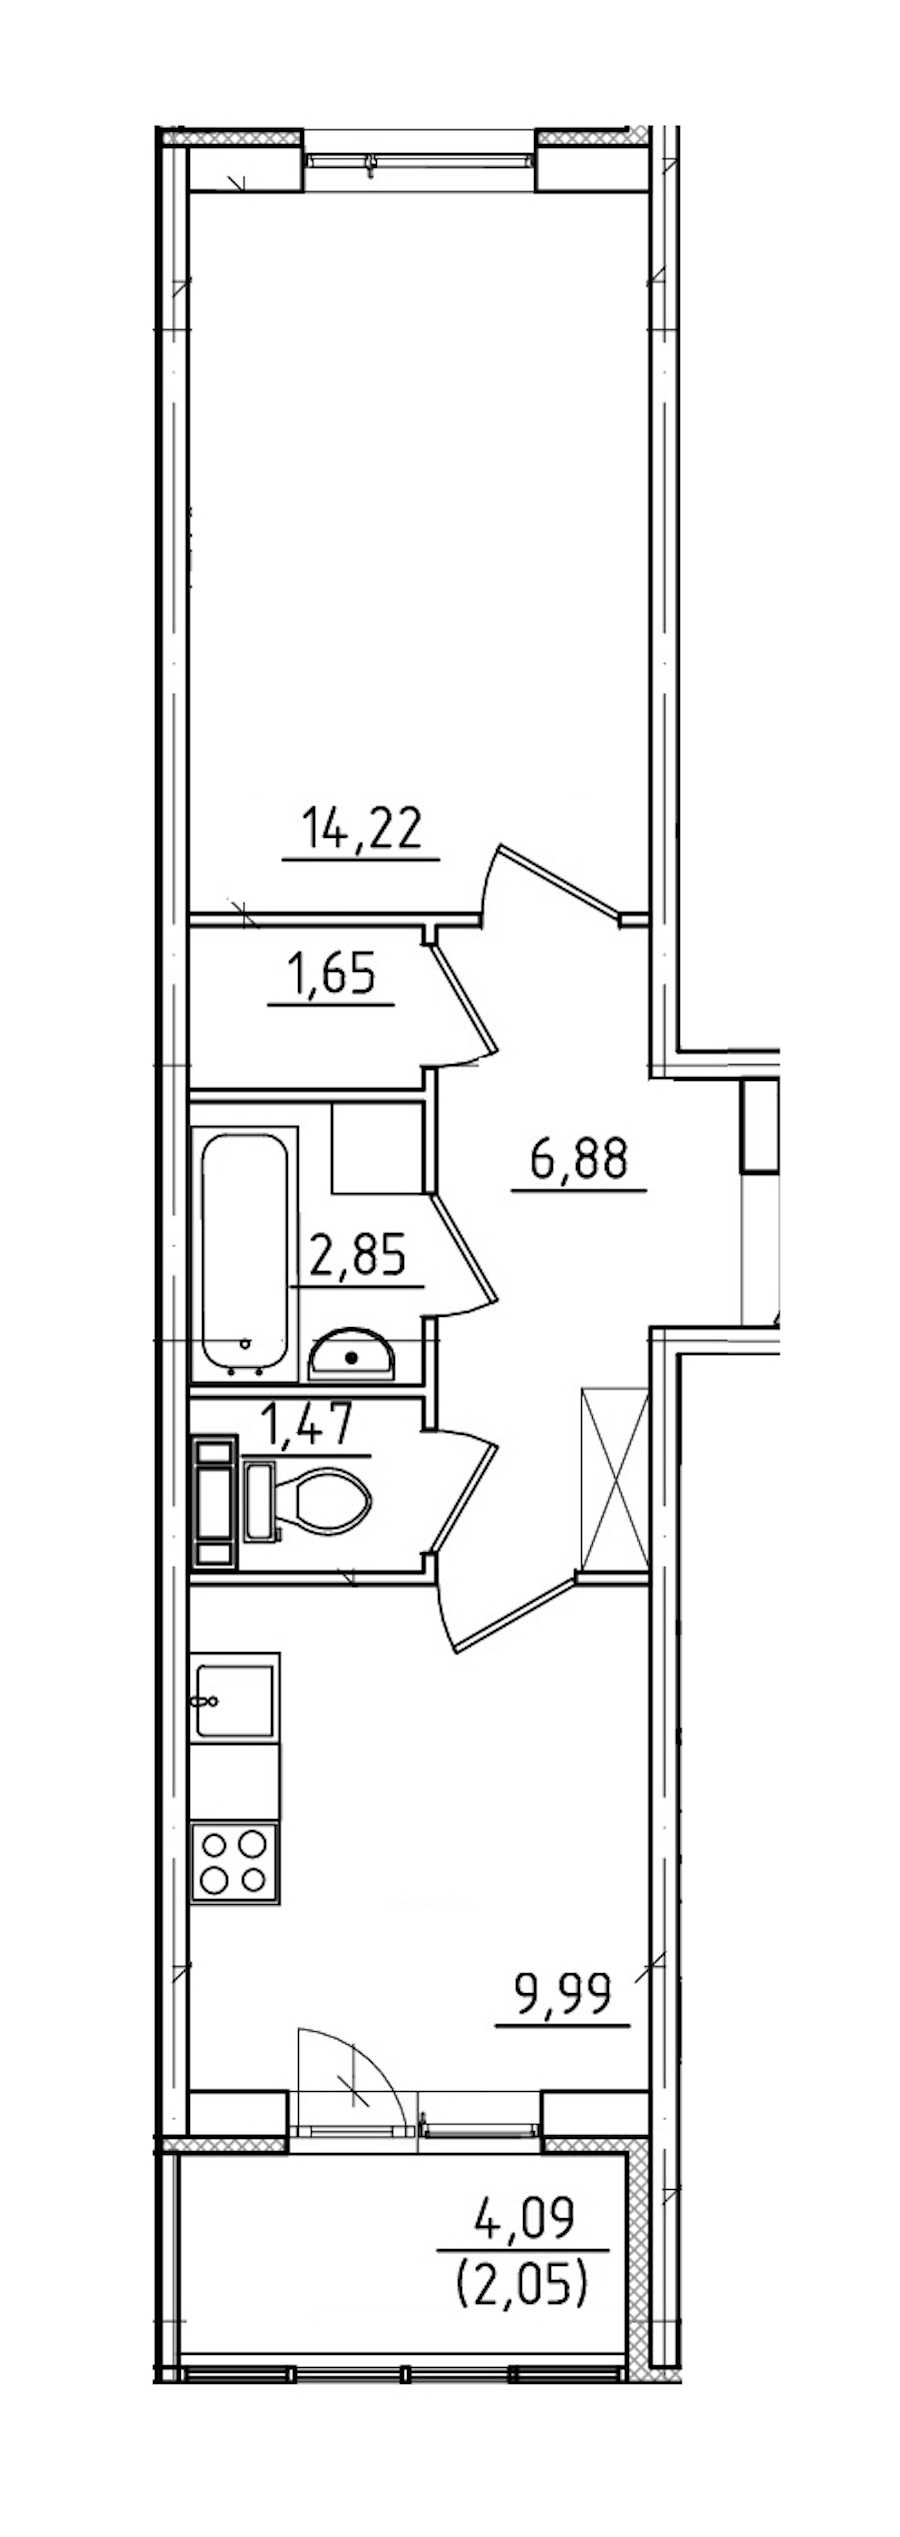 Однокомнатная квартира в ЛенСтройТрест: площадь 39.11 м2 , этаж: 3 – купить в Санкт-Петербурге